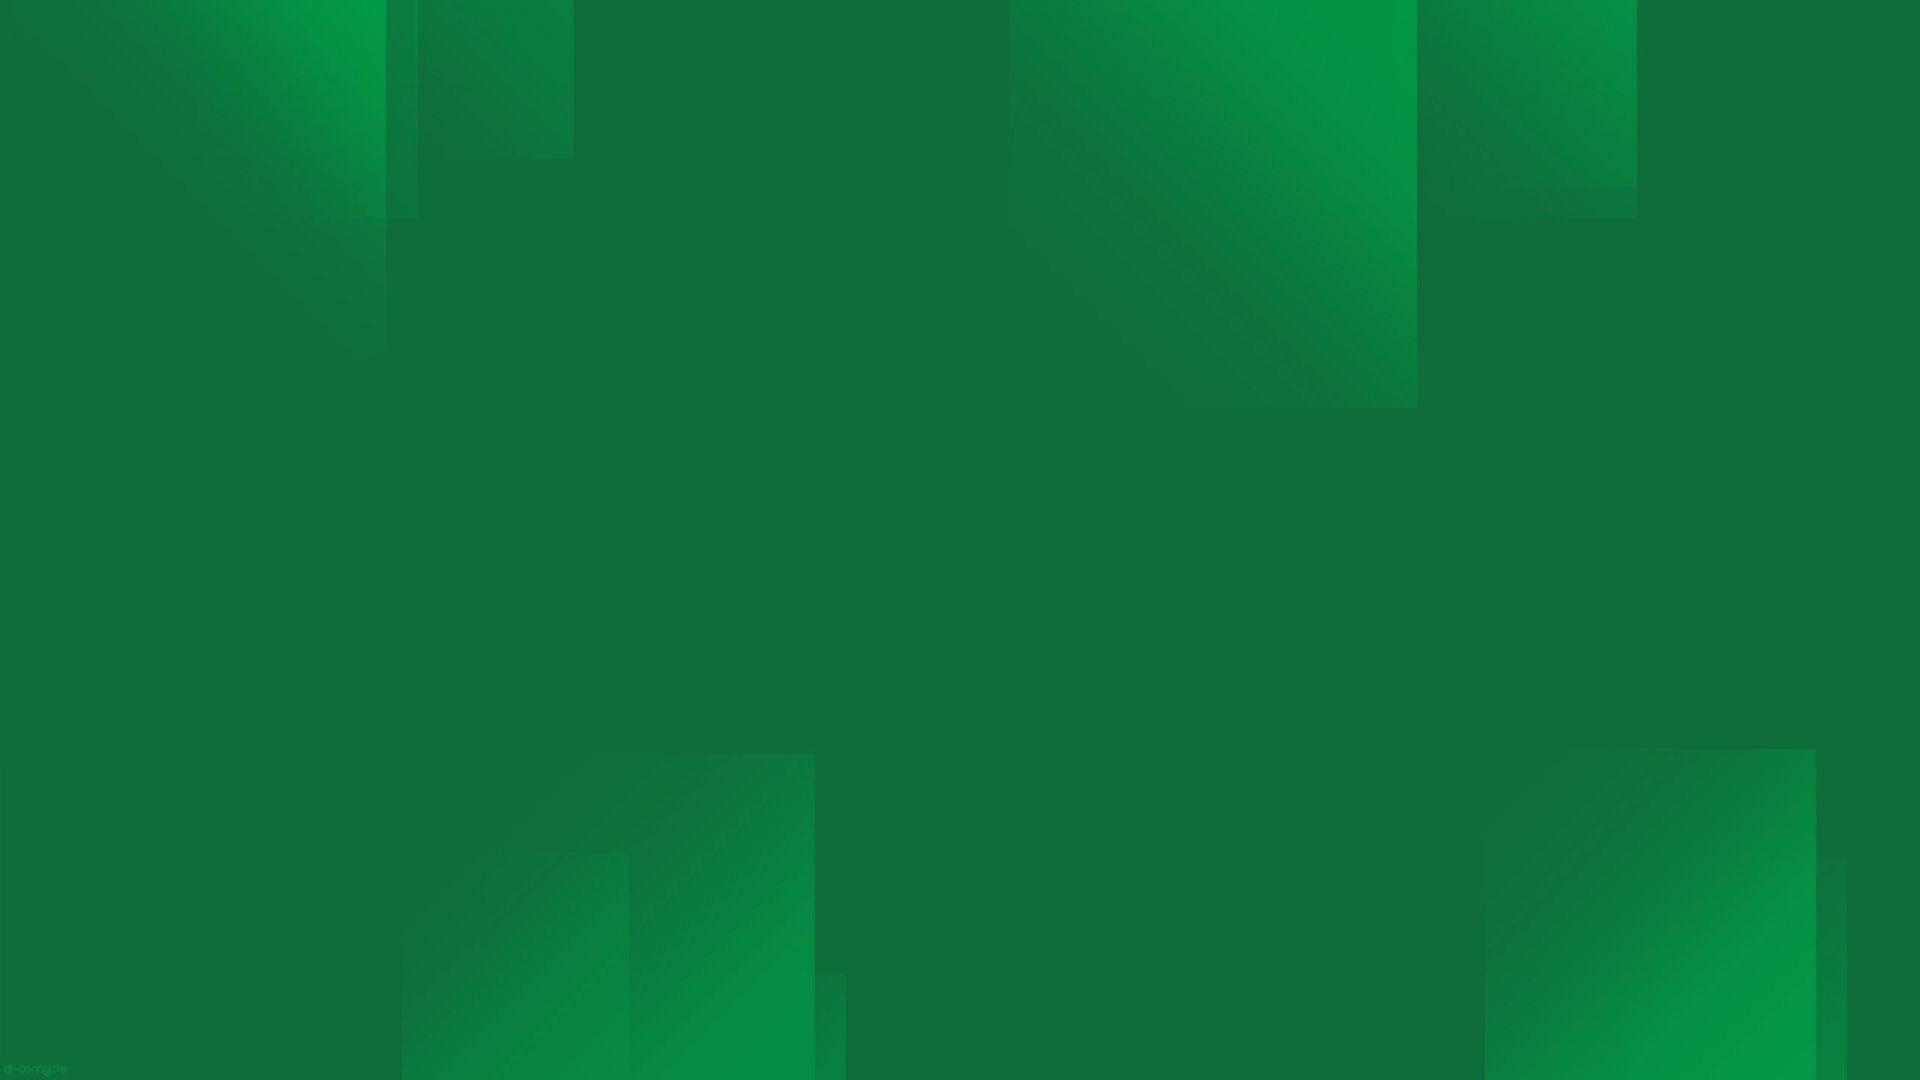 Free Dark Green Wallpaper 41165 1920x1080 px